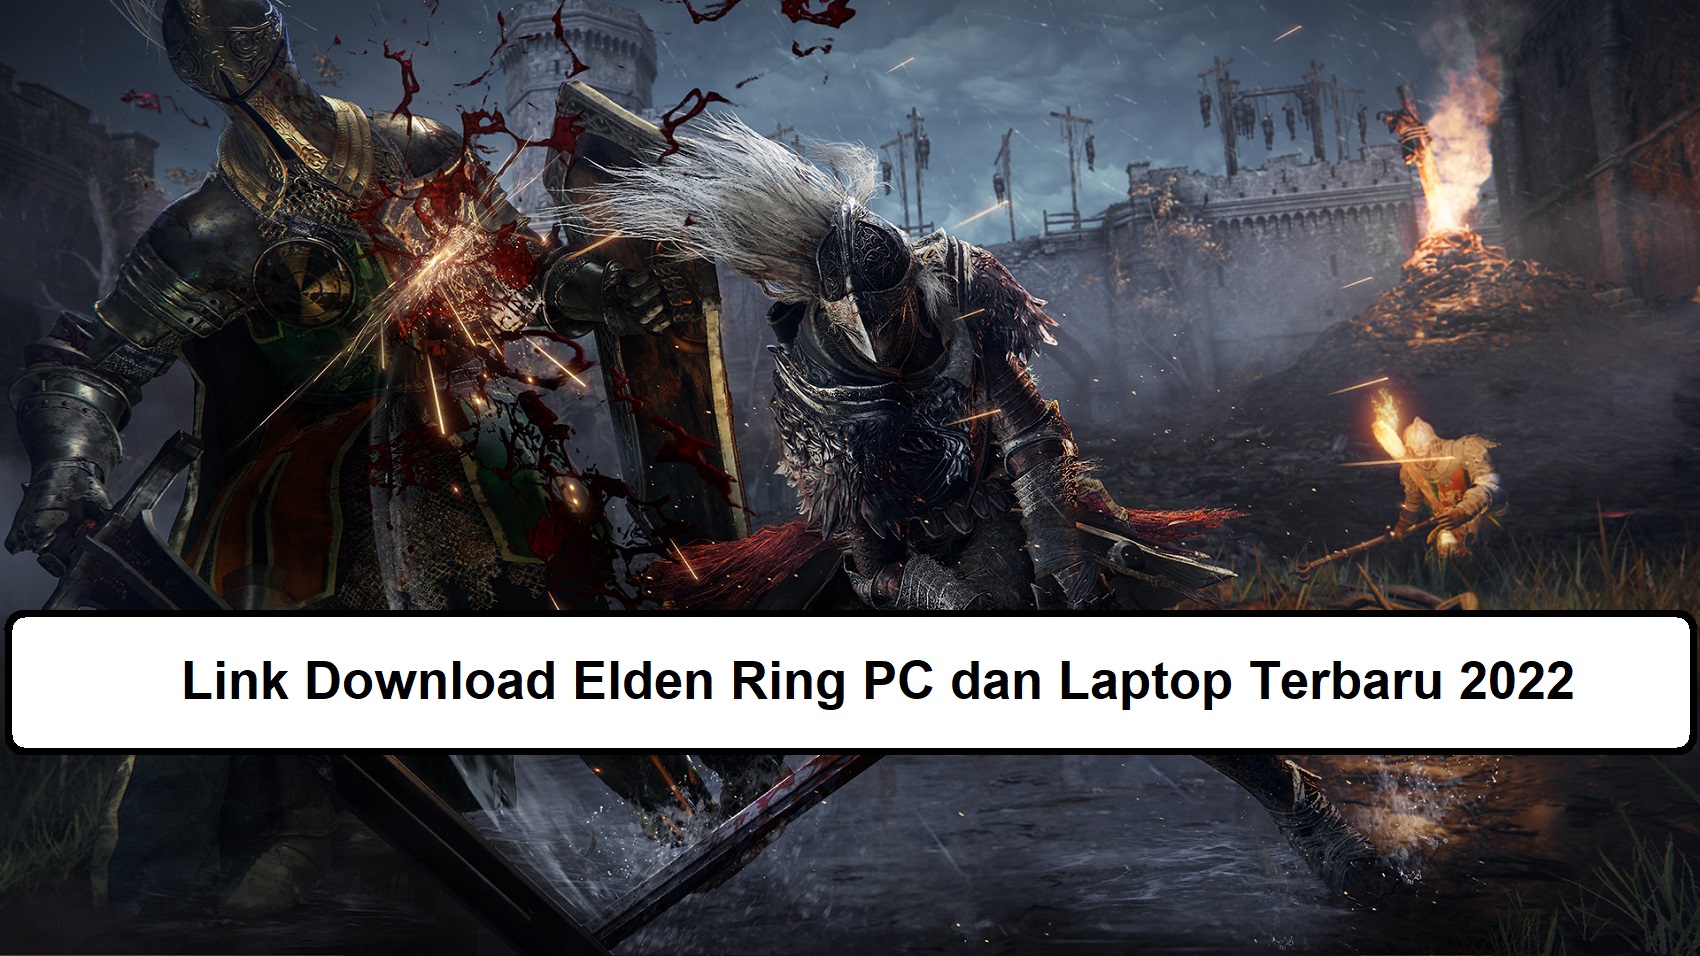 Link Download Elden Ring PC dan Laptop Terbaru 2022